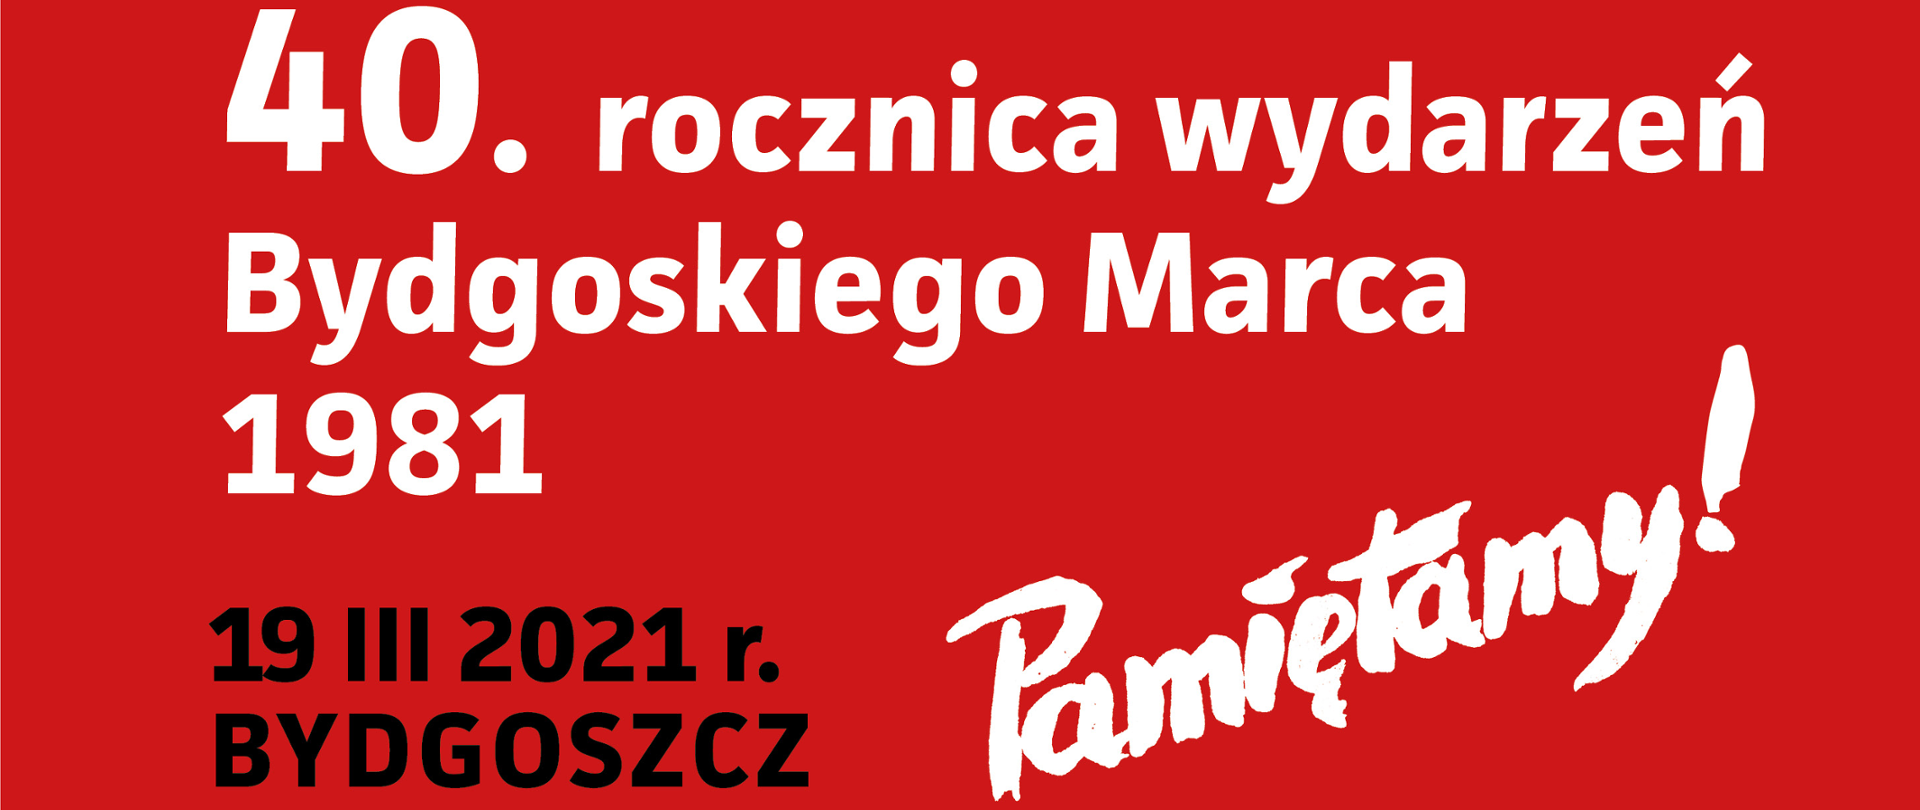 Plakat z napisem: 40. rocznica wydarzeń Bydgoskiego Marca 1981, 19 III 2021 r. Bydgoszcz, Pamiętamy!